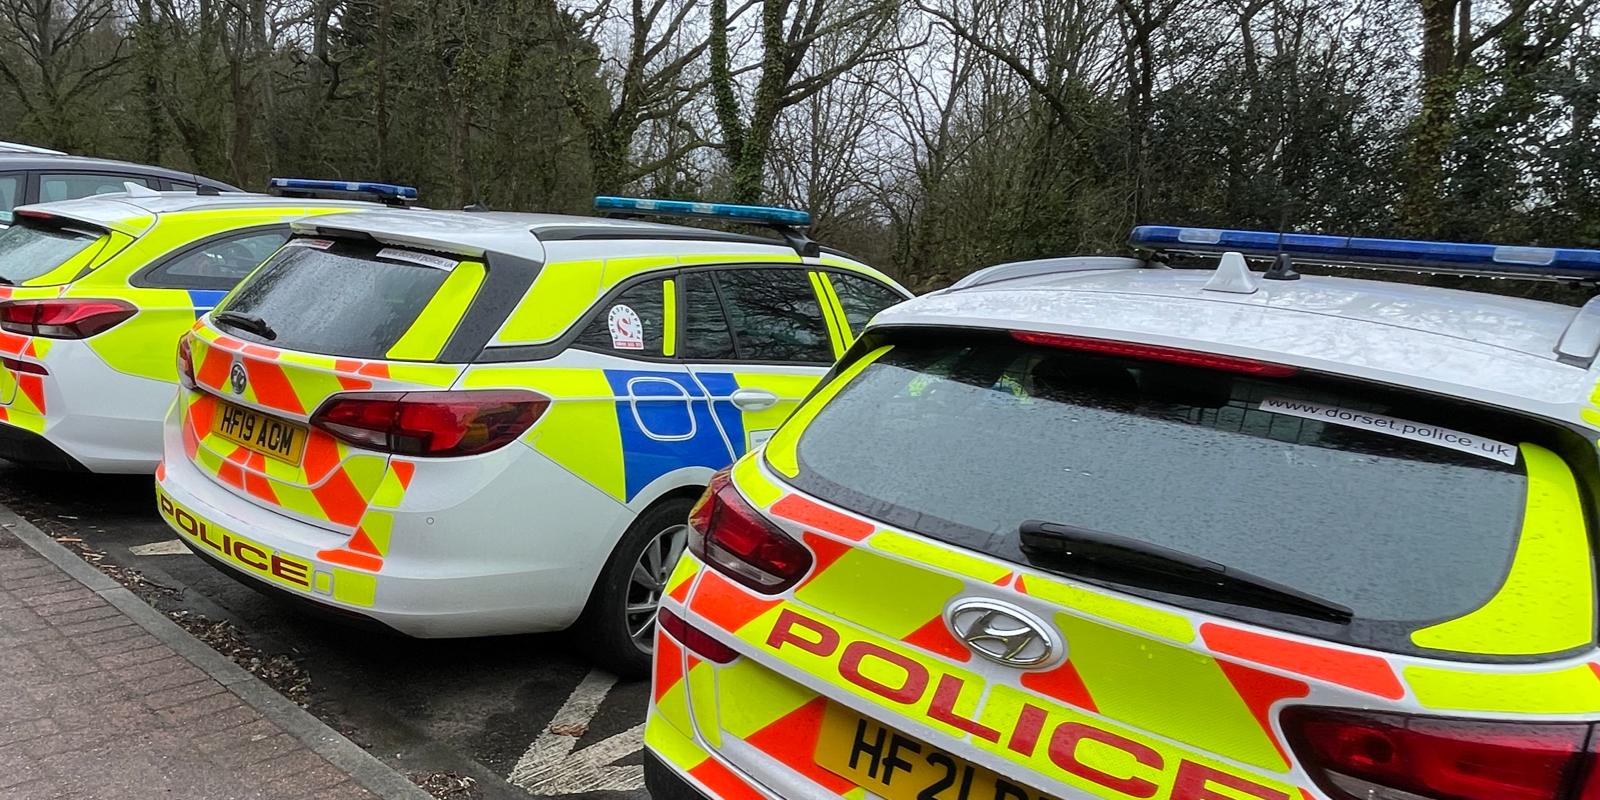 Dorset Police Cars